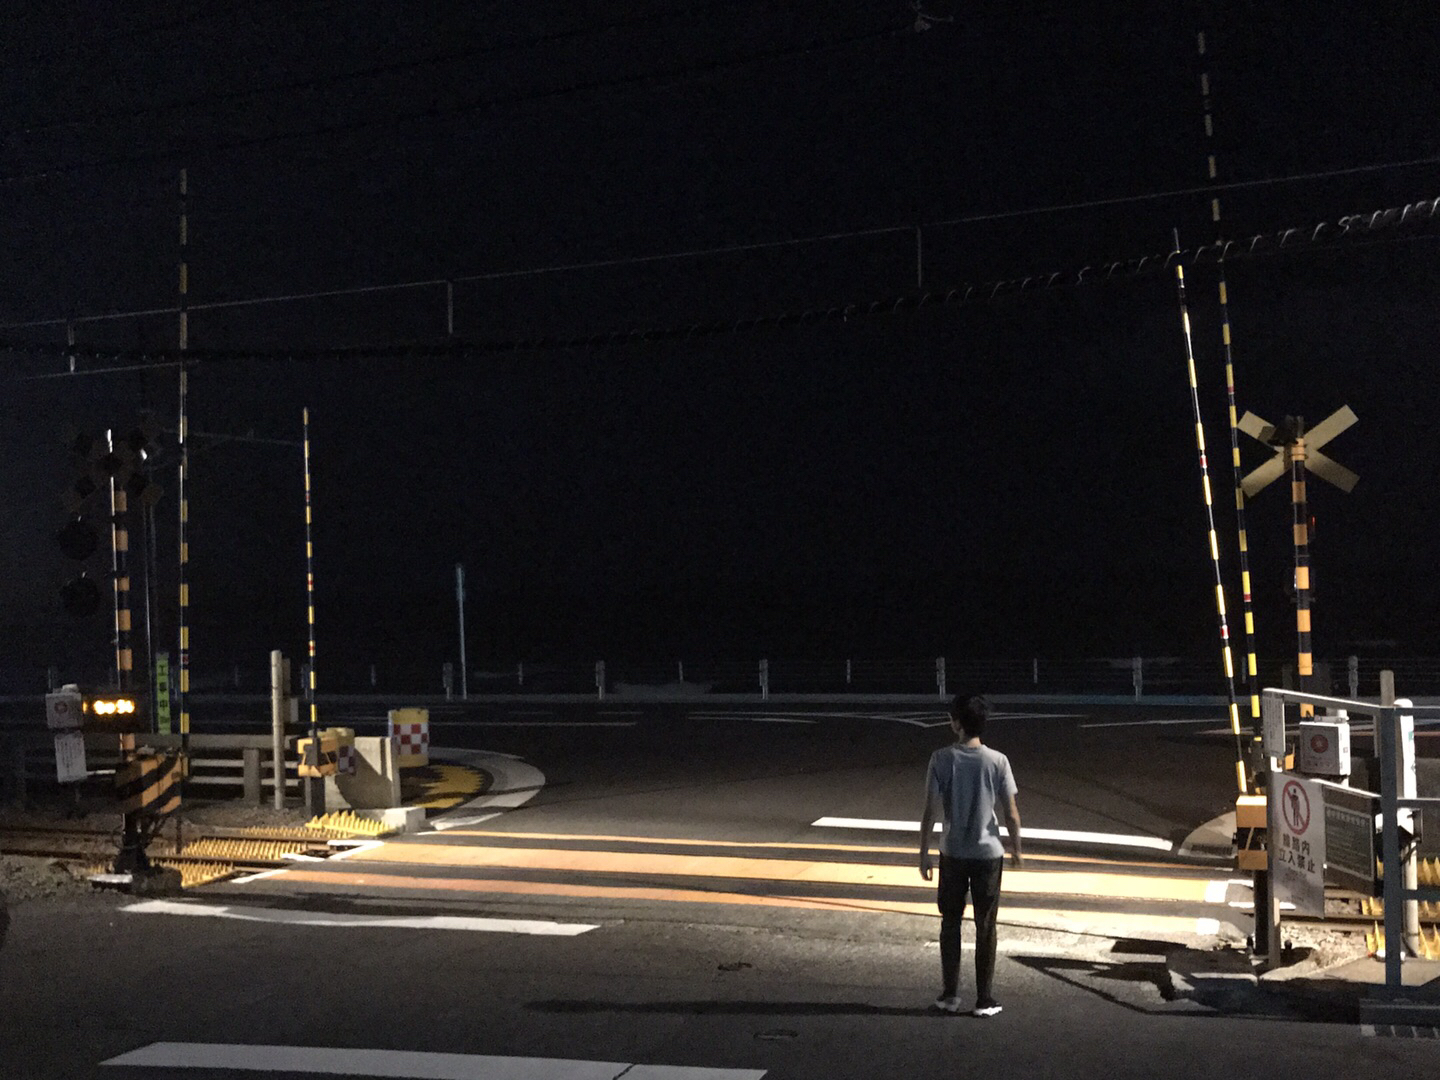 拍下你所在的城市夜深的样子,踏切,湘南海岸,日本